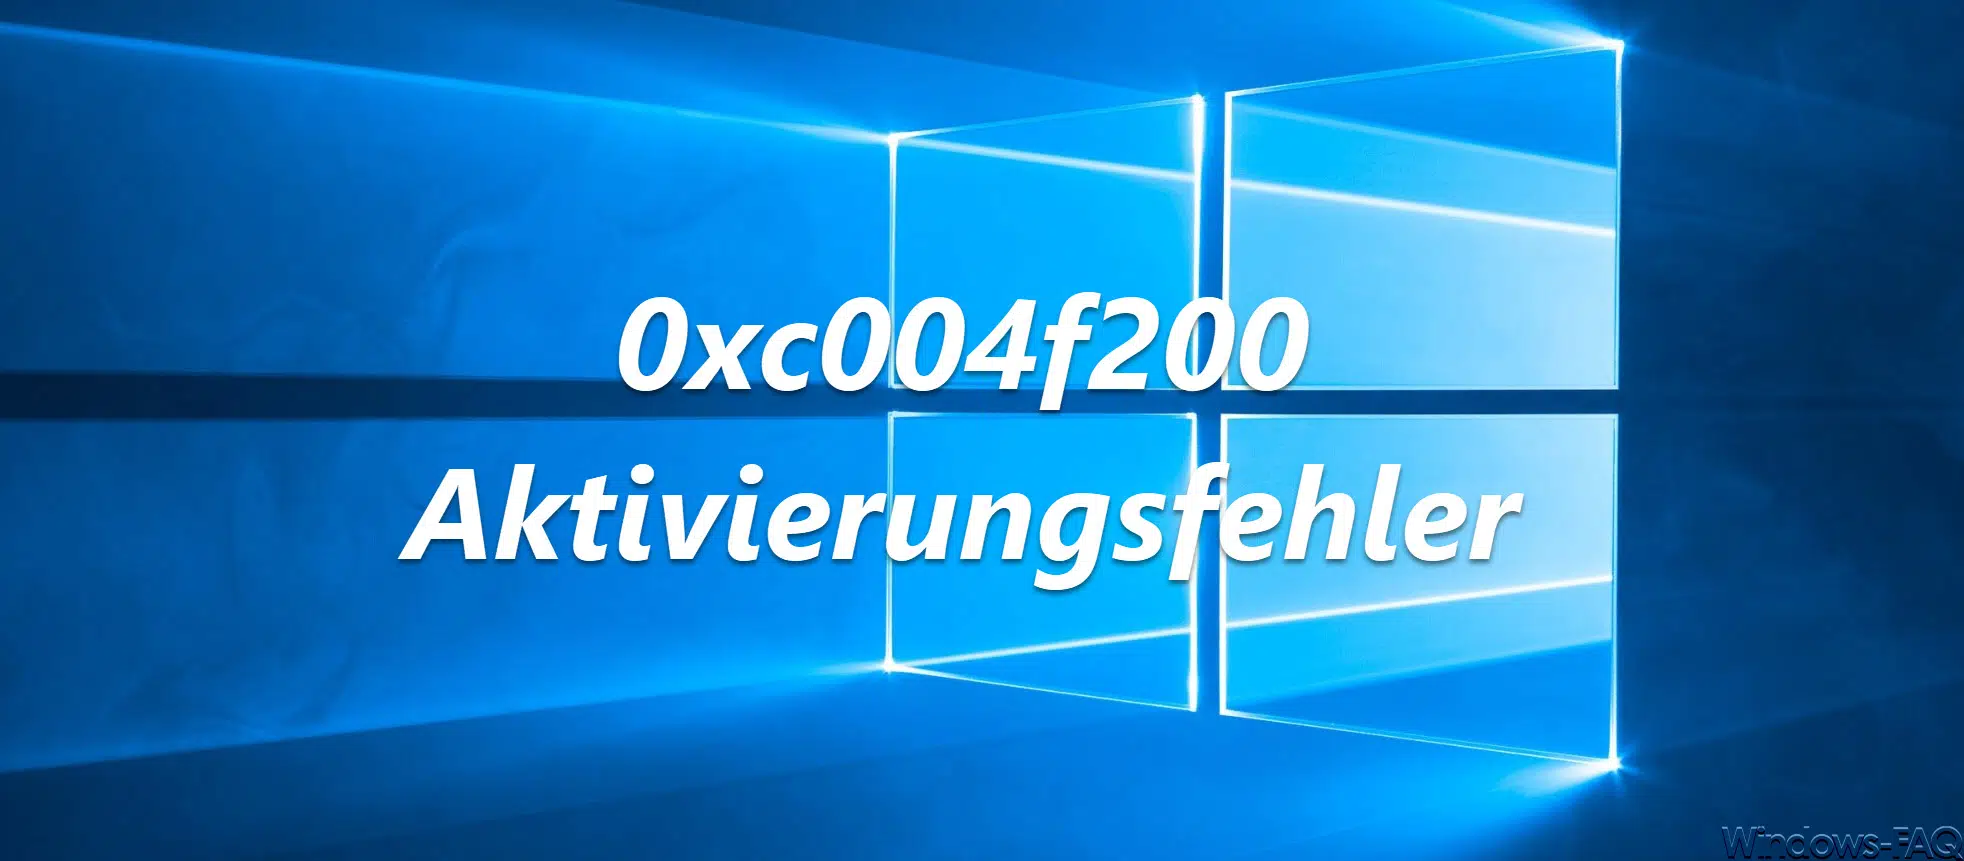 0xc004f200 Aktivierungsfehler bei Windows 7 Clients nach KB4480960 und KB4480970